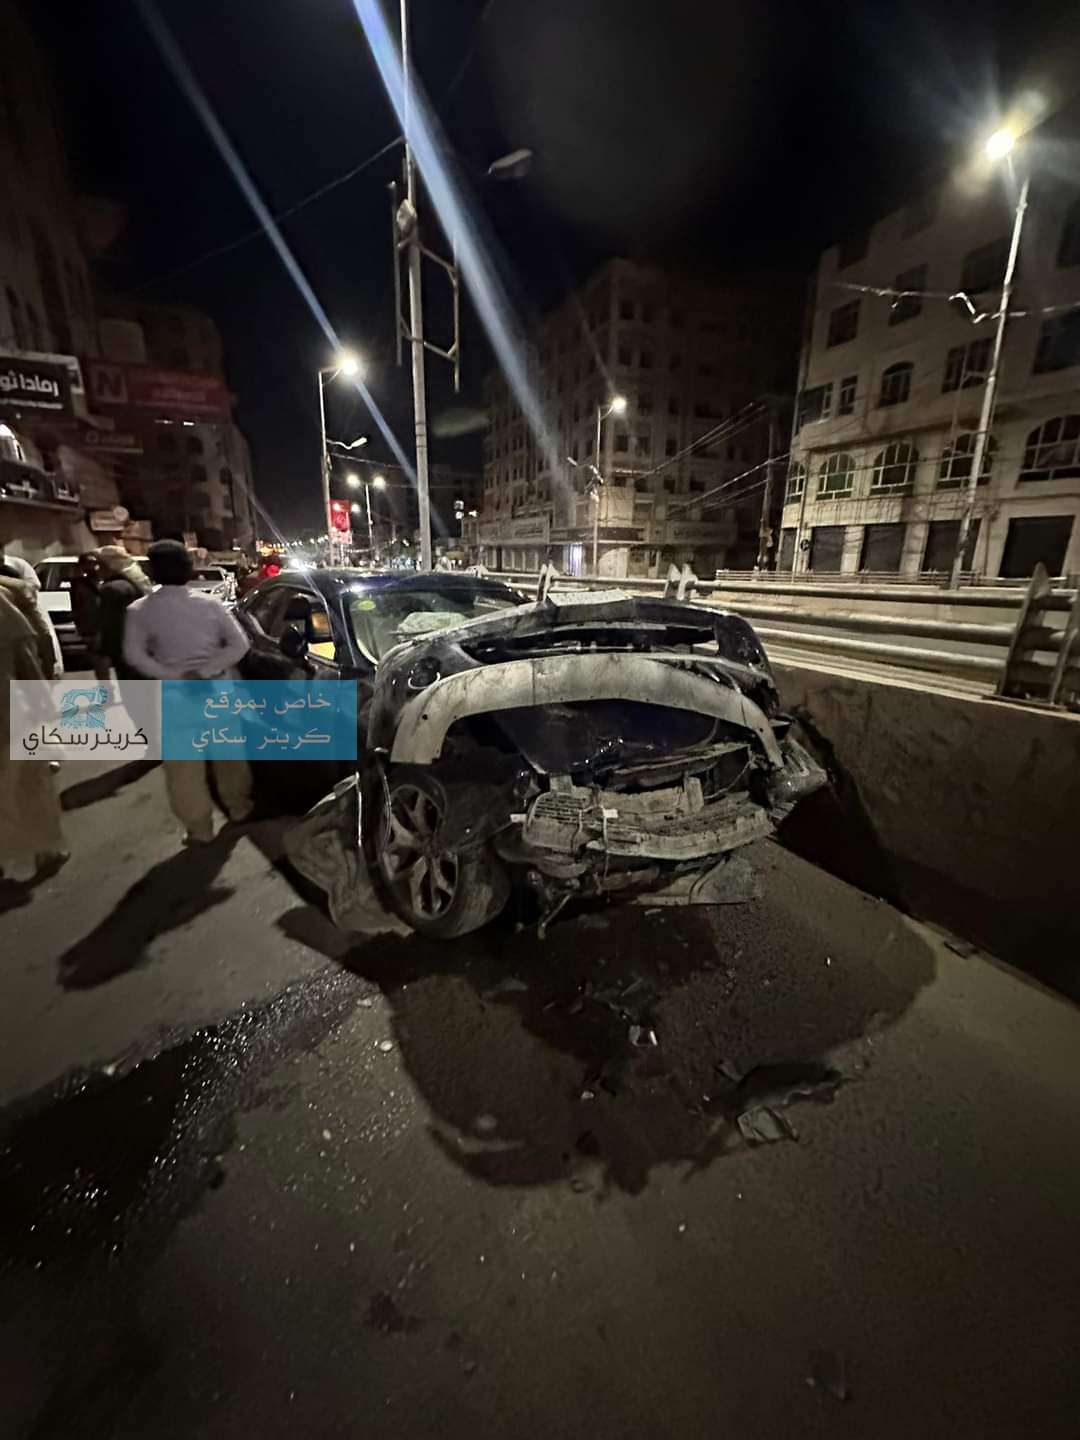 نجاة فنان شهير من موت محقق عقب تعرضه لهذا الامر في صنعاء(صورة)